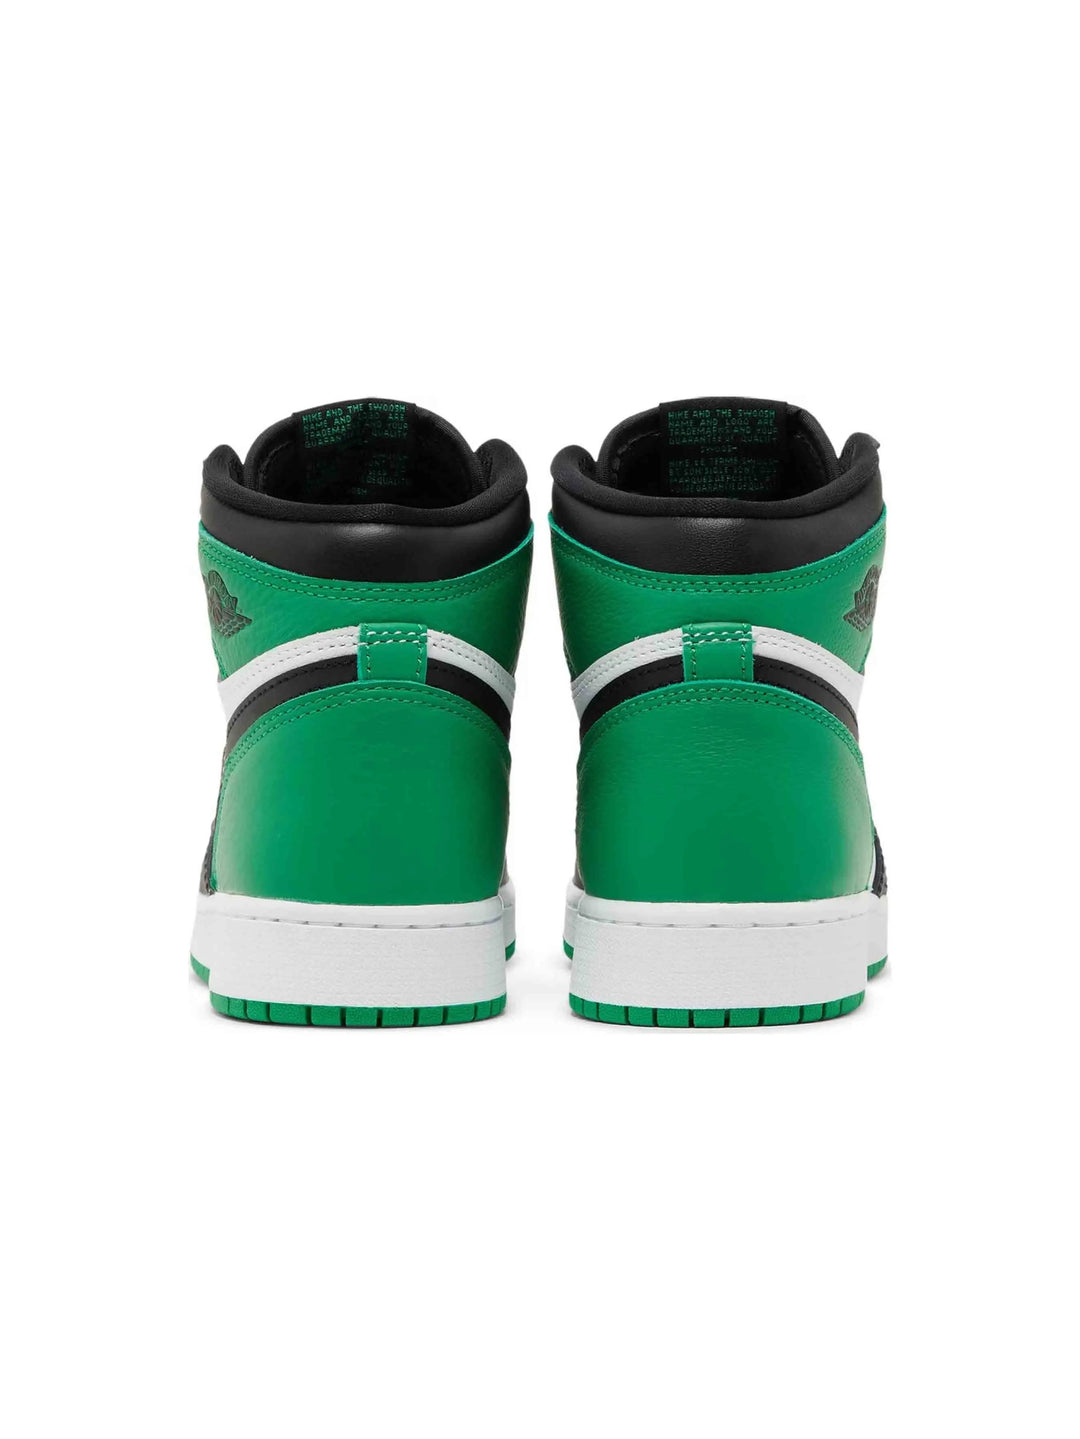 Nike Air Jordan 1 Retro High OG Lucky Green (GS) Prior